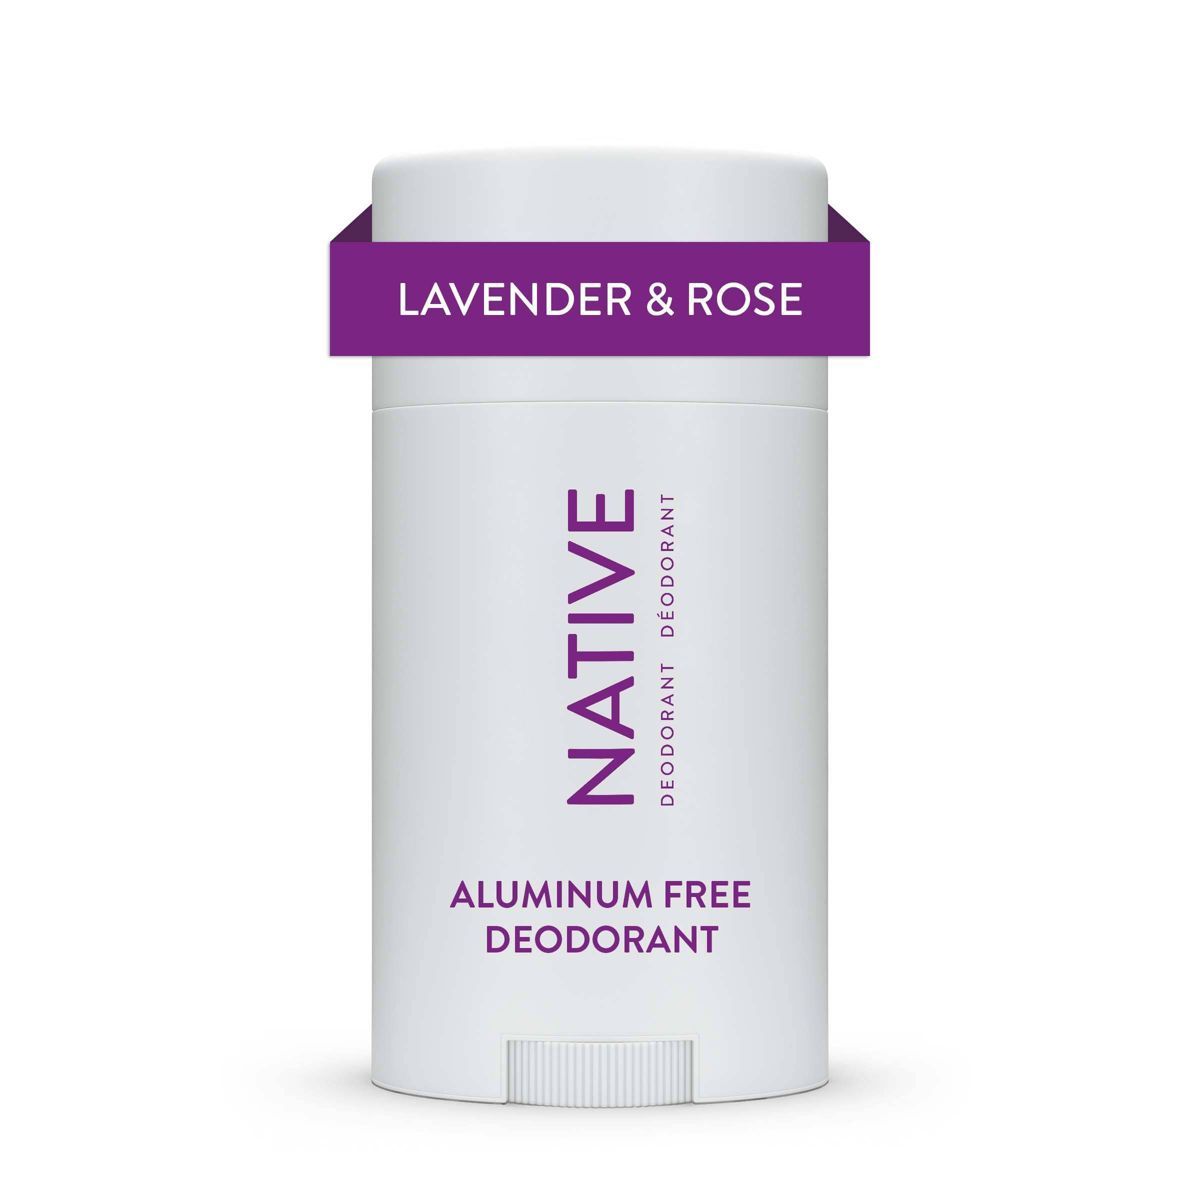 Native Deodorant - Lavender & Rose - Aluminum Free - 2.65 oz | Target